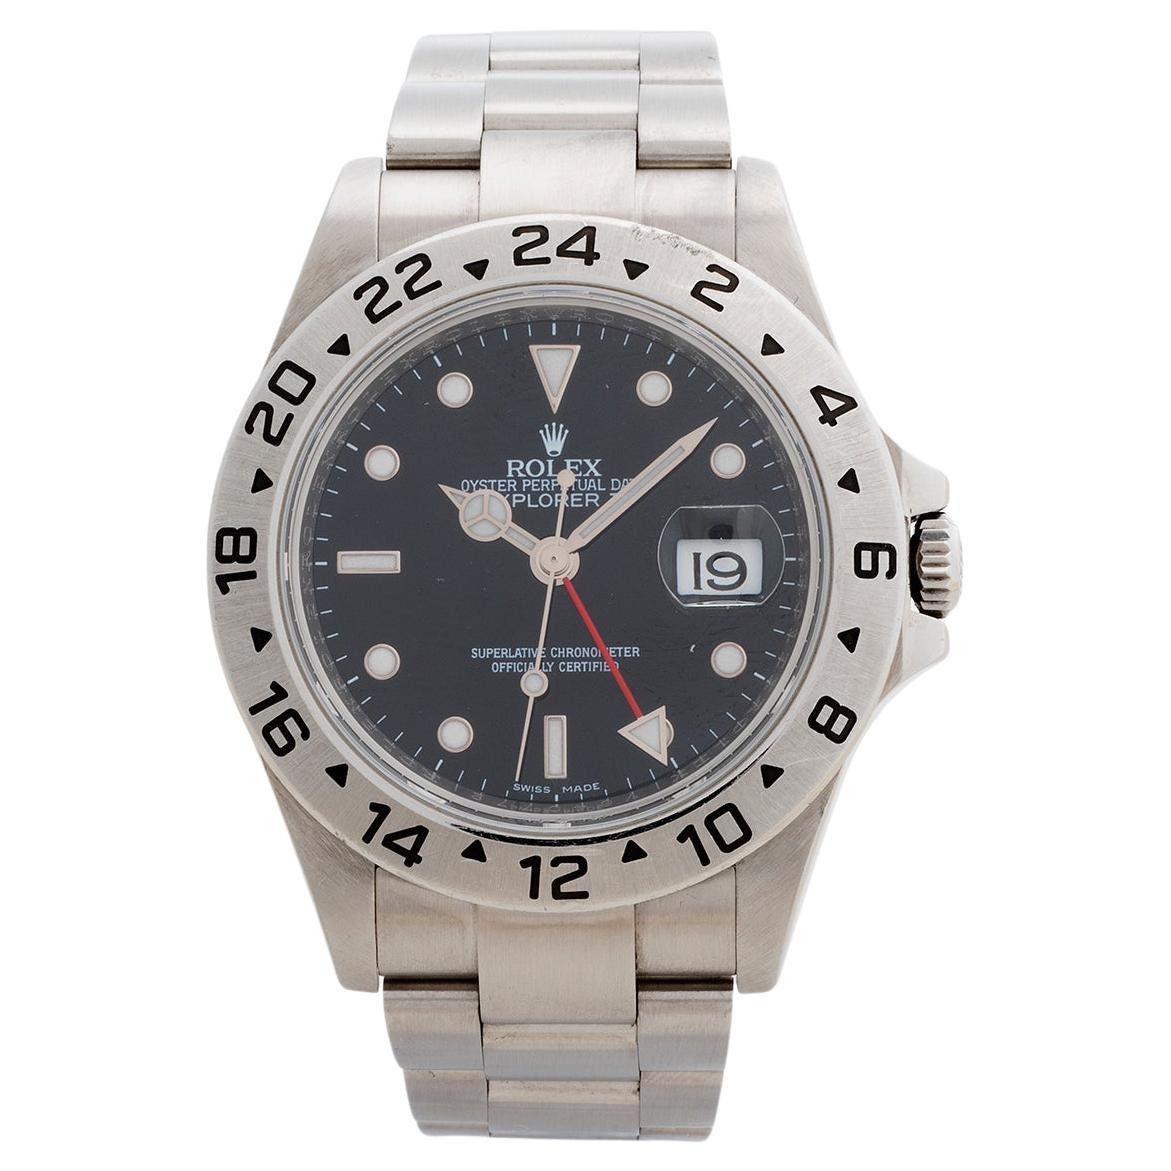 Rolex Explorer II Wristwatch Ref 16570, 40mm Case, 3186 movement, Yr 2010.